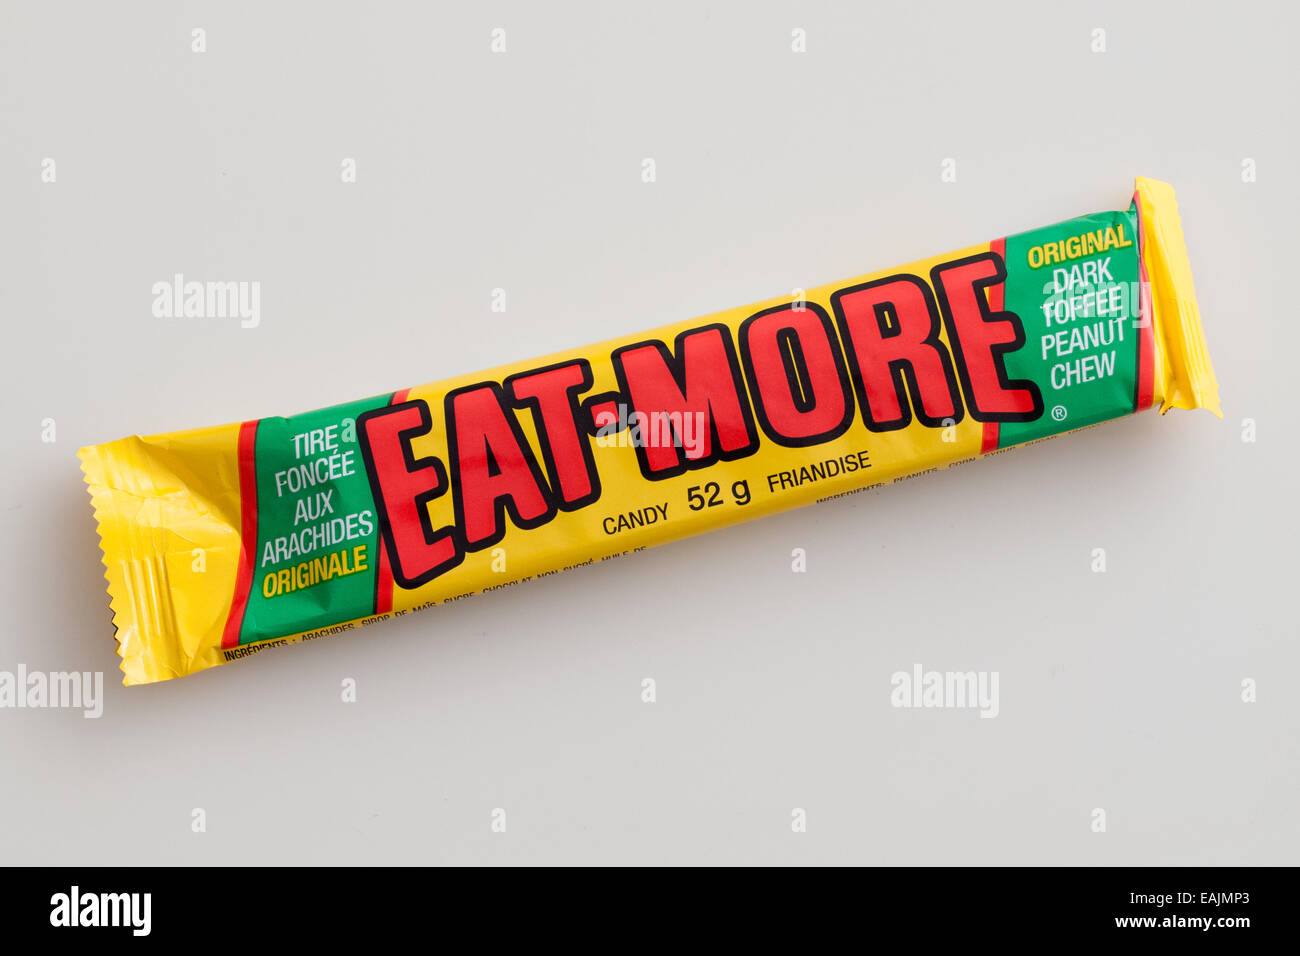 Un Eat-More candy bar, faite par la Compagnie Hershey. Banque D'Images